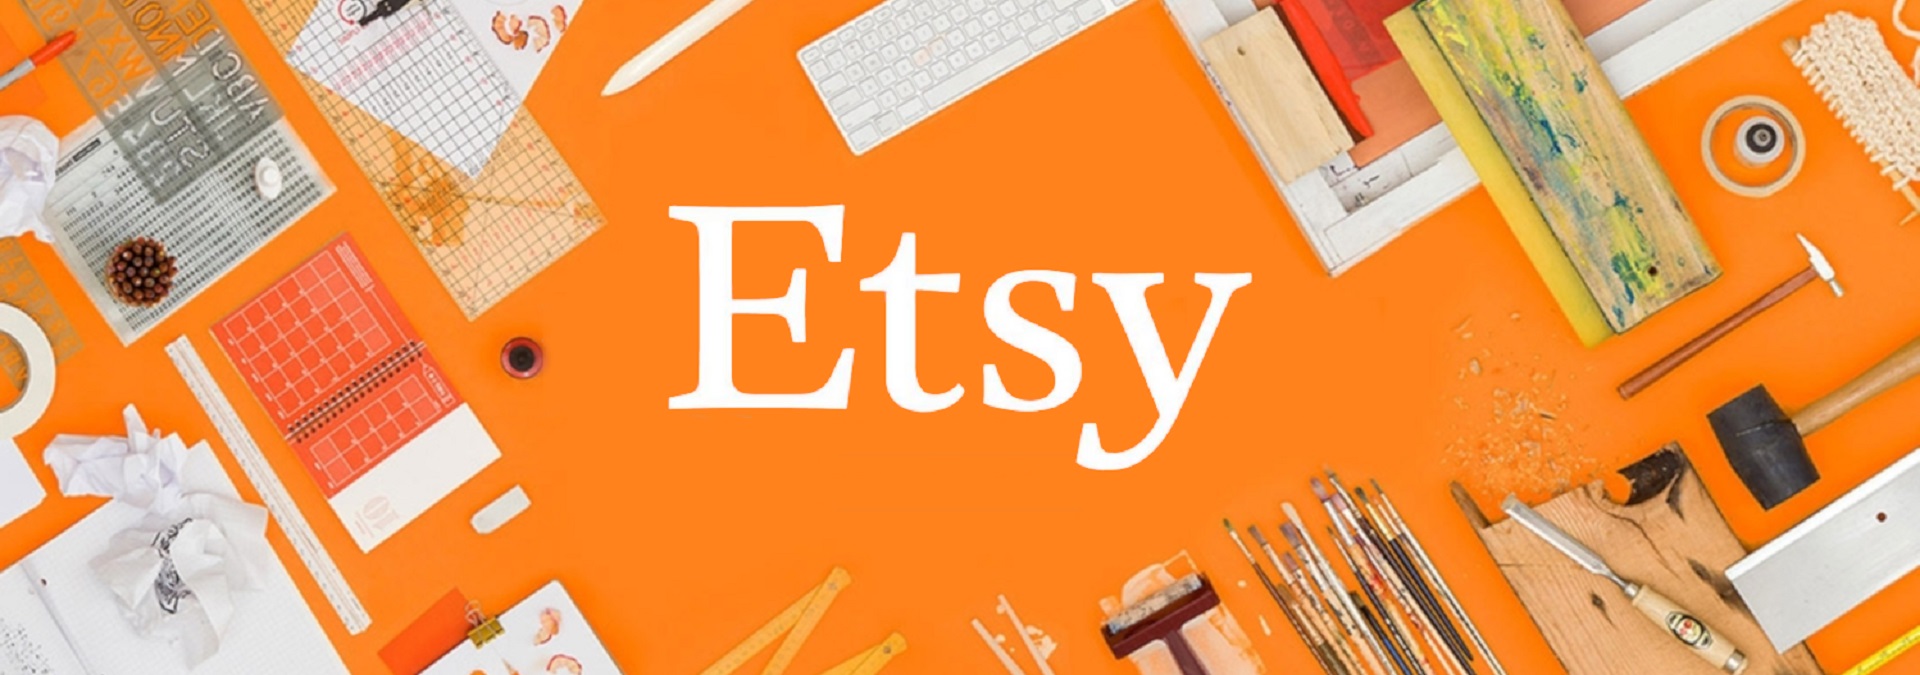 Etsy, son yıllarda Amazon ile birlikte en çok ismi duyulan global e-ticaret platformlarından birini oluşturuyor.